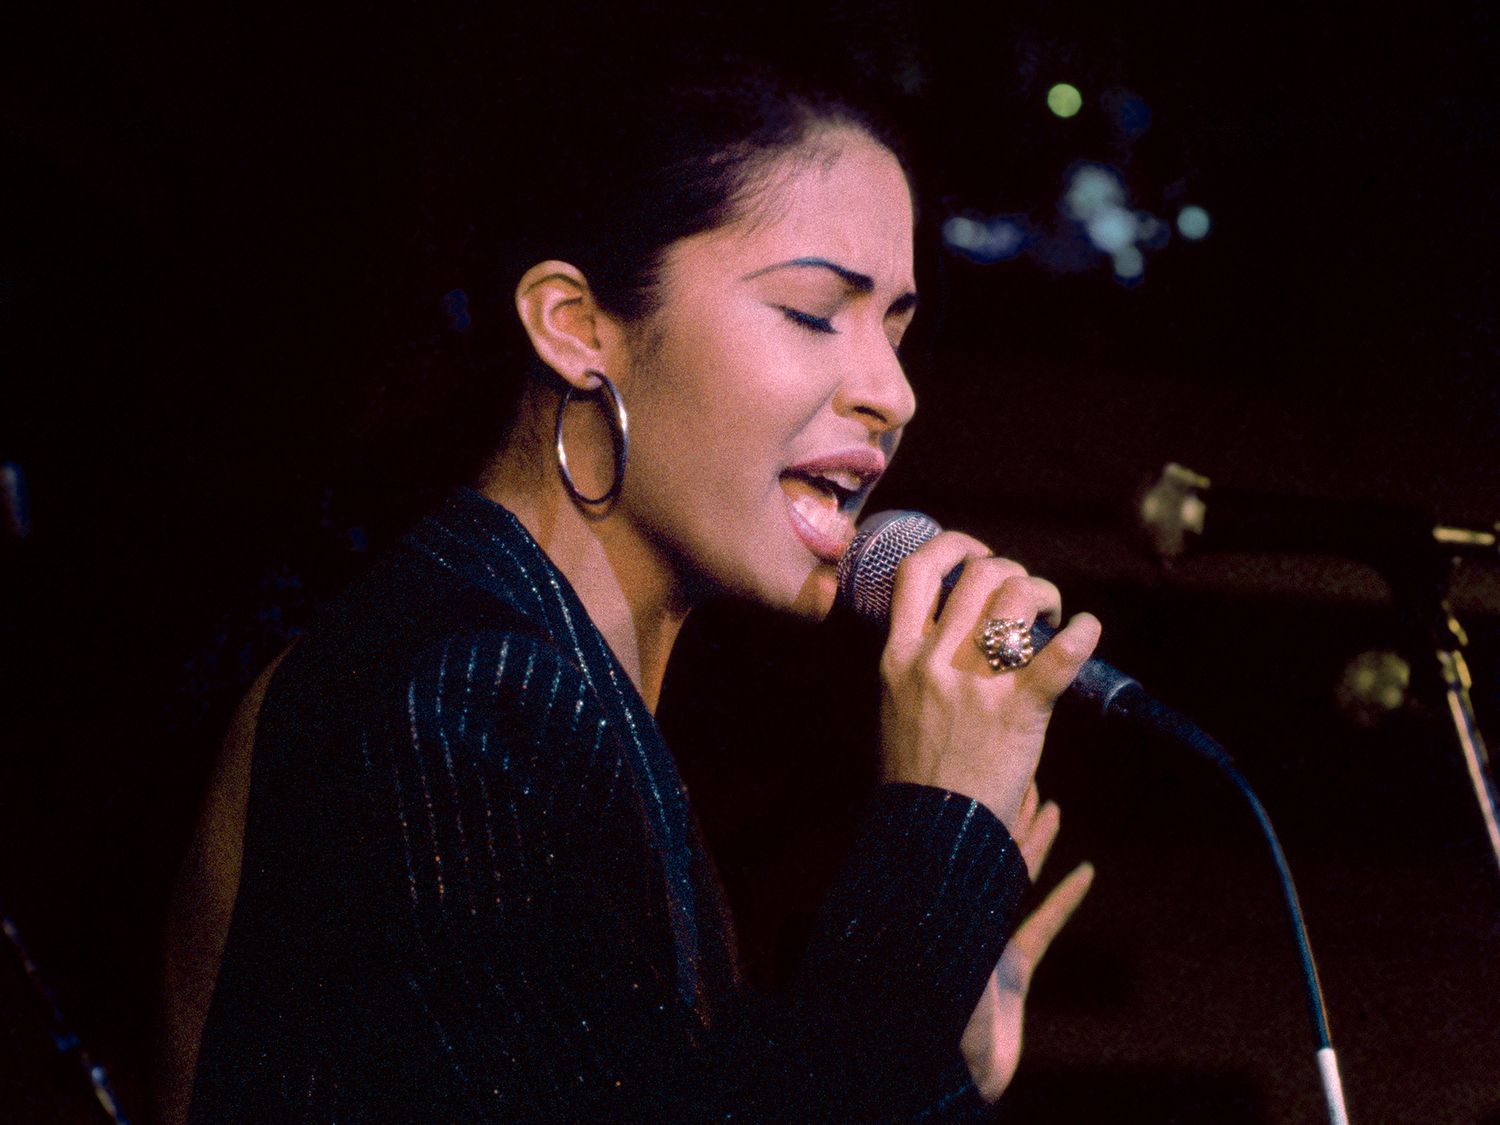 Selena (Quintanilla) se produit à l'ouverture du Hard Rock Café le 12 janvier 1995 à San Antonio, Texas